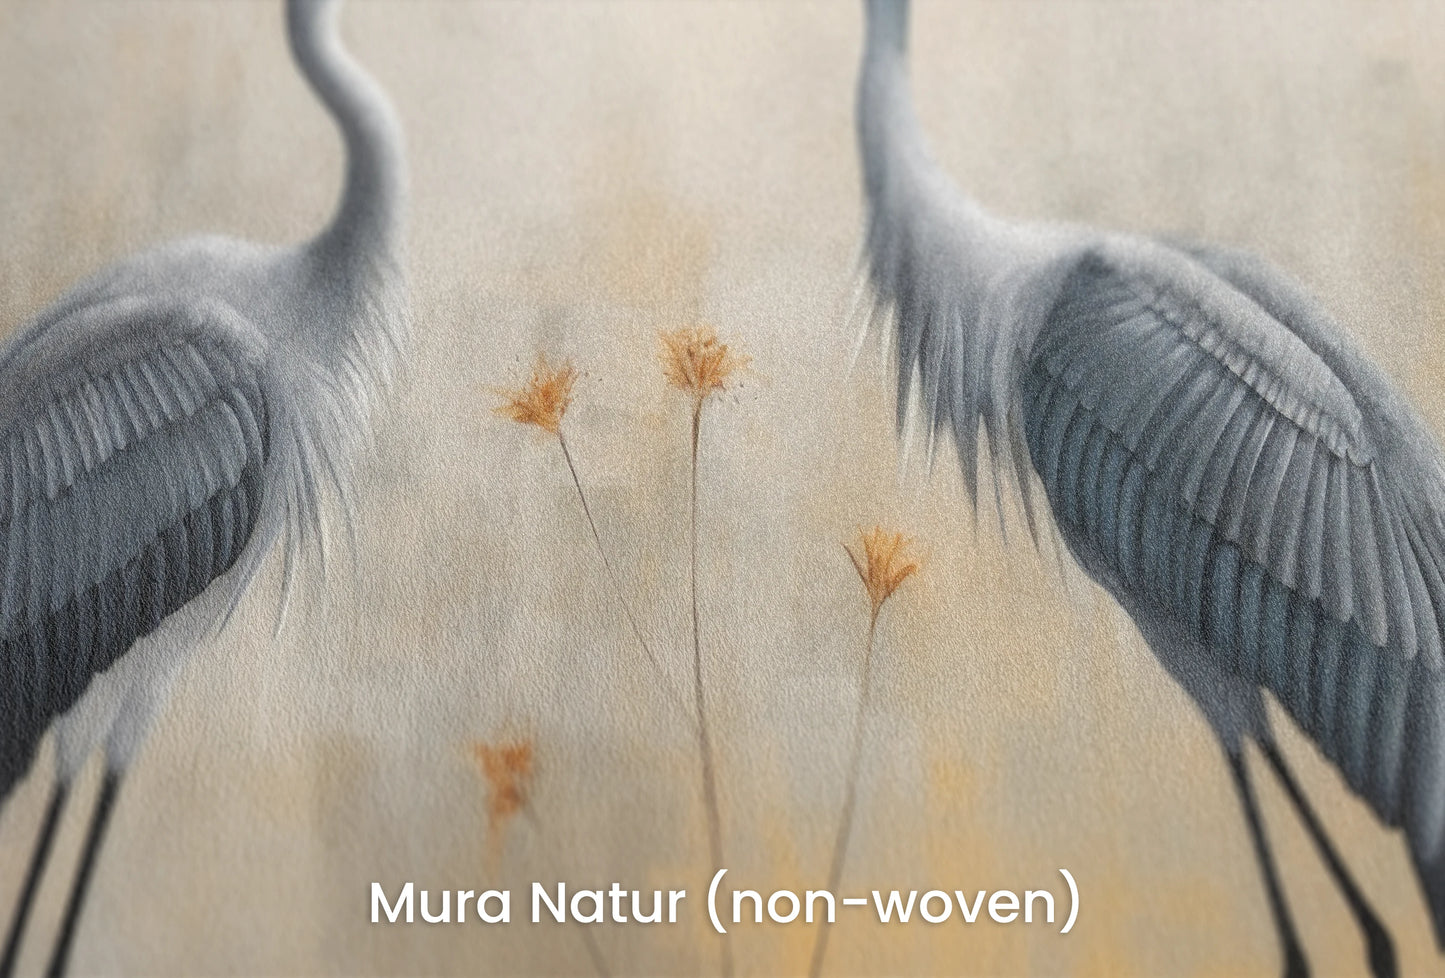 Zbliżenie na artystyczną fototapetę o nazwie Tranquil Unity na podłożu Mura Natur (non-woven) - naturalne i ekologiczne podłoże.